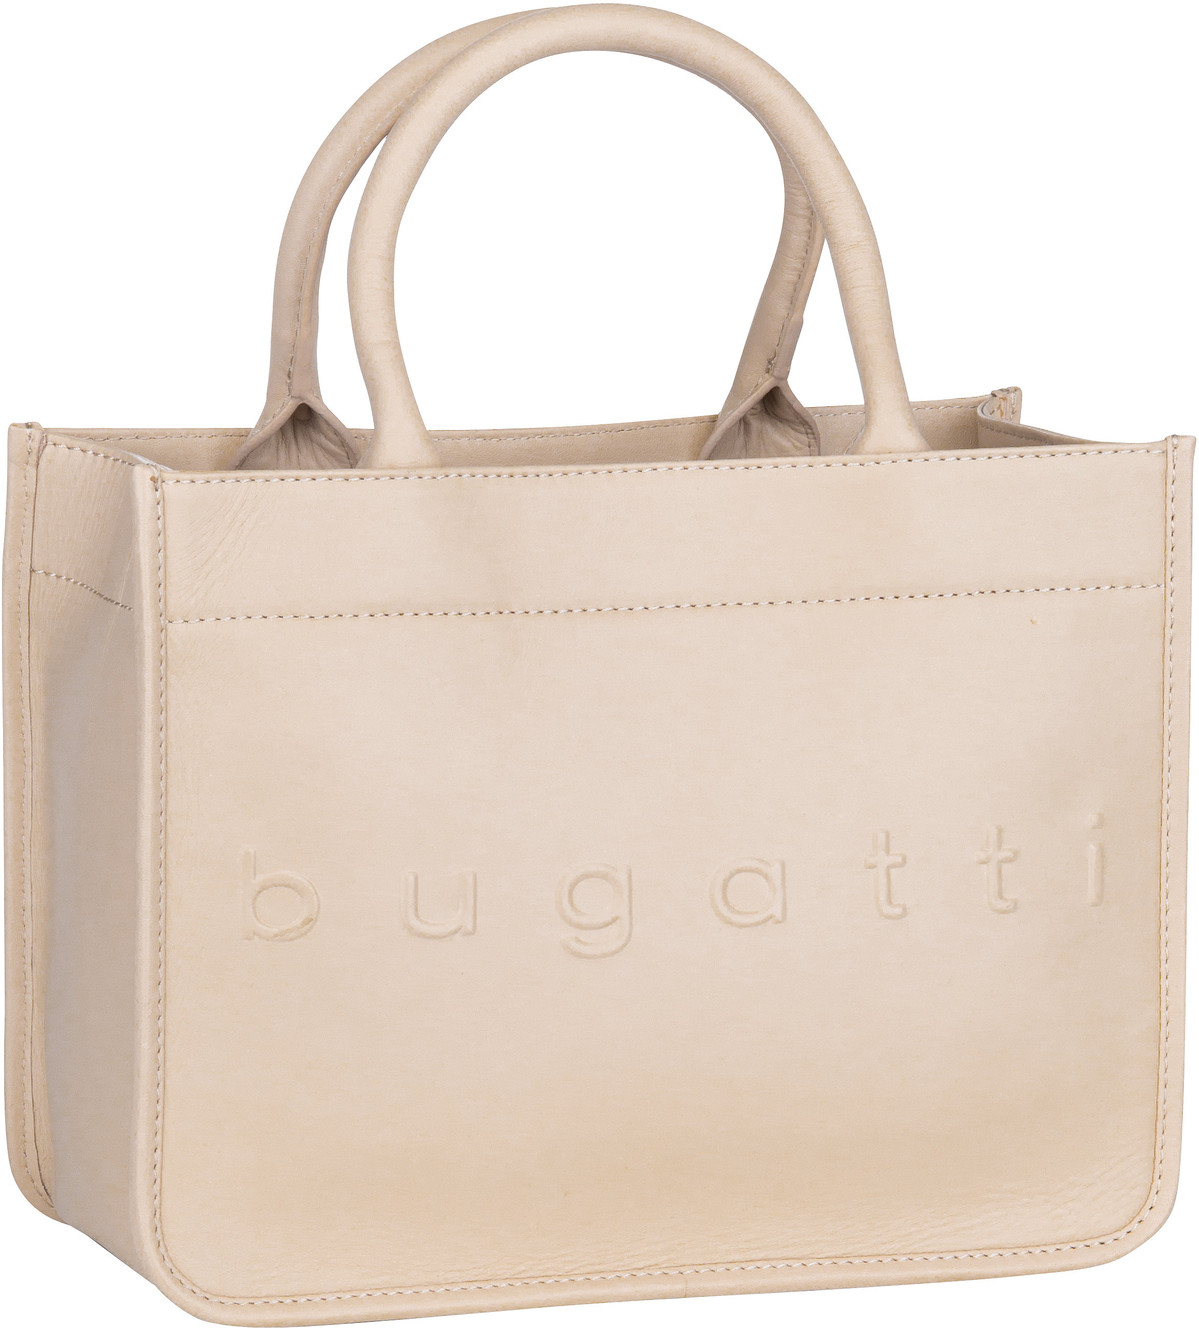 Bugatti Daphne Tote Bag S  in Beige (8.8 Liter), Handtasche